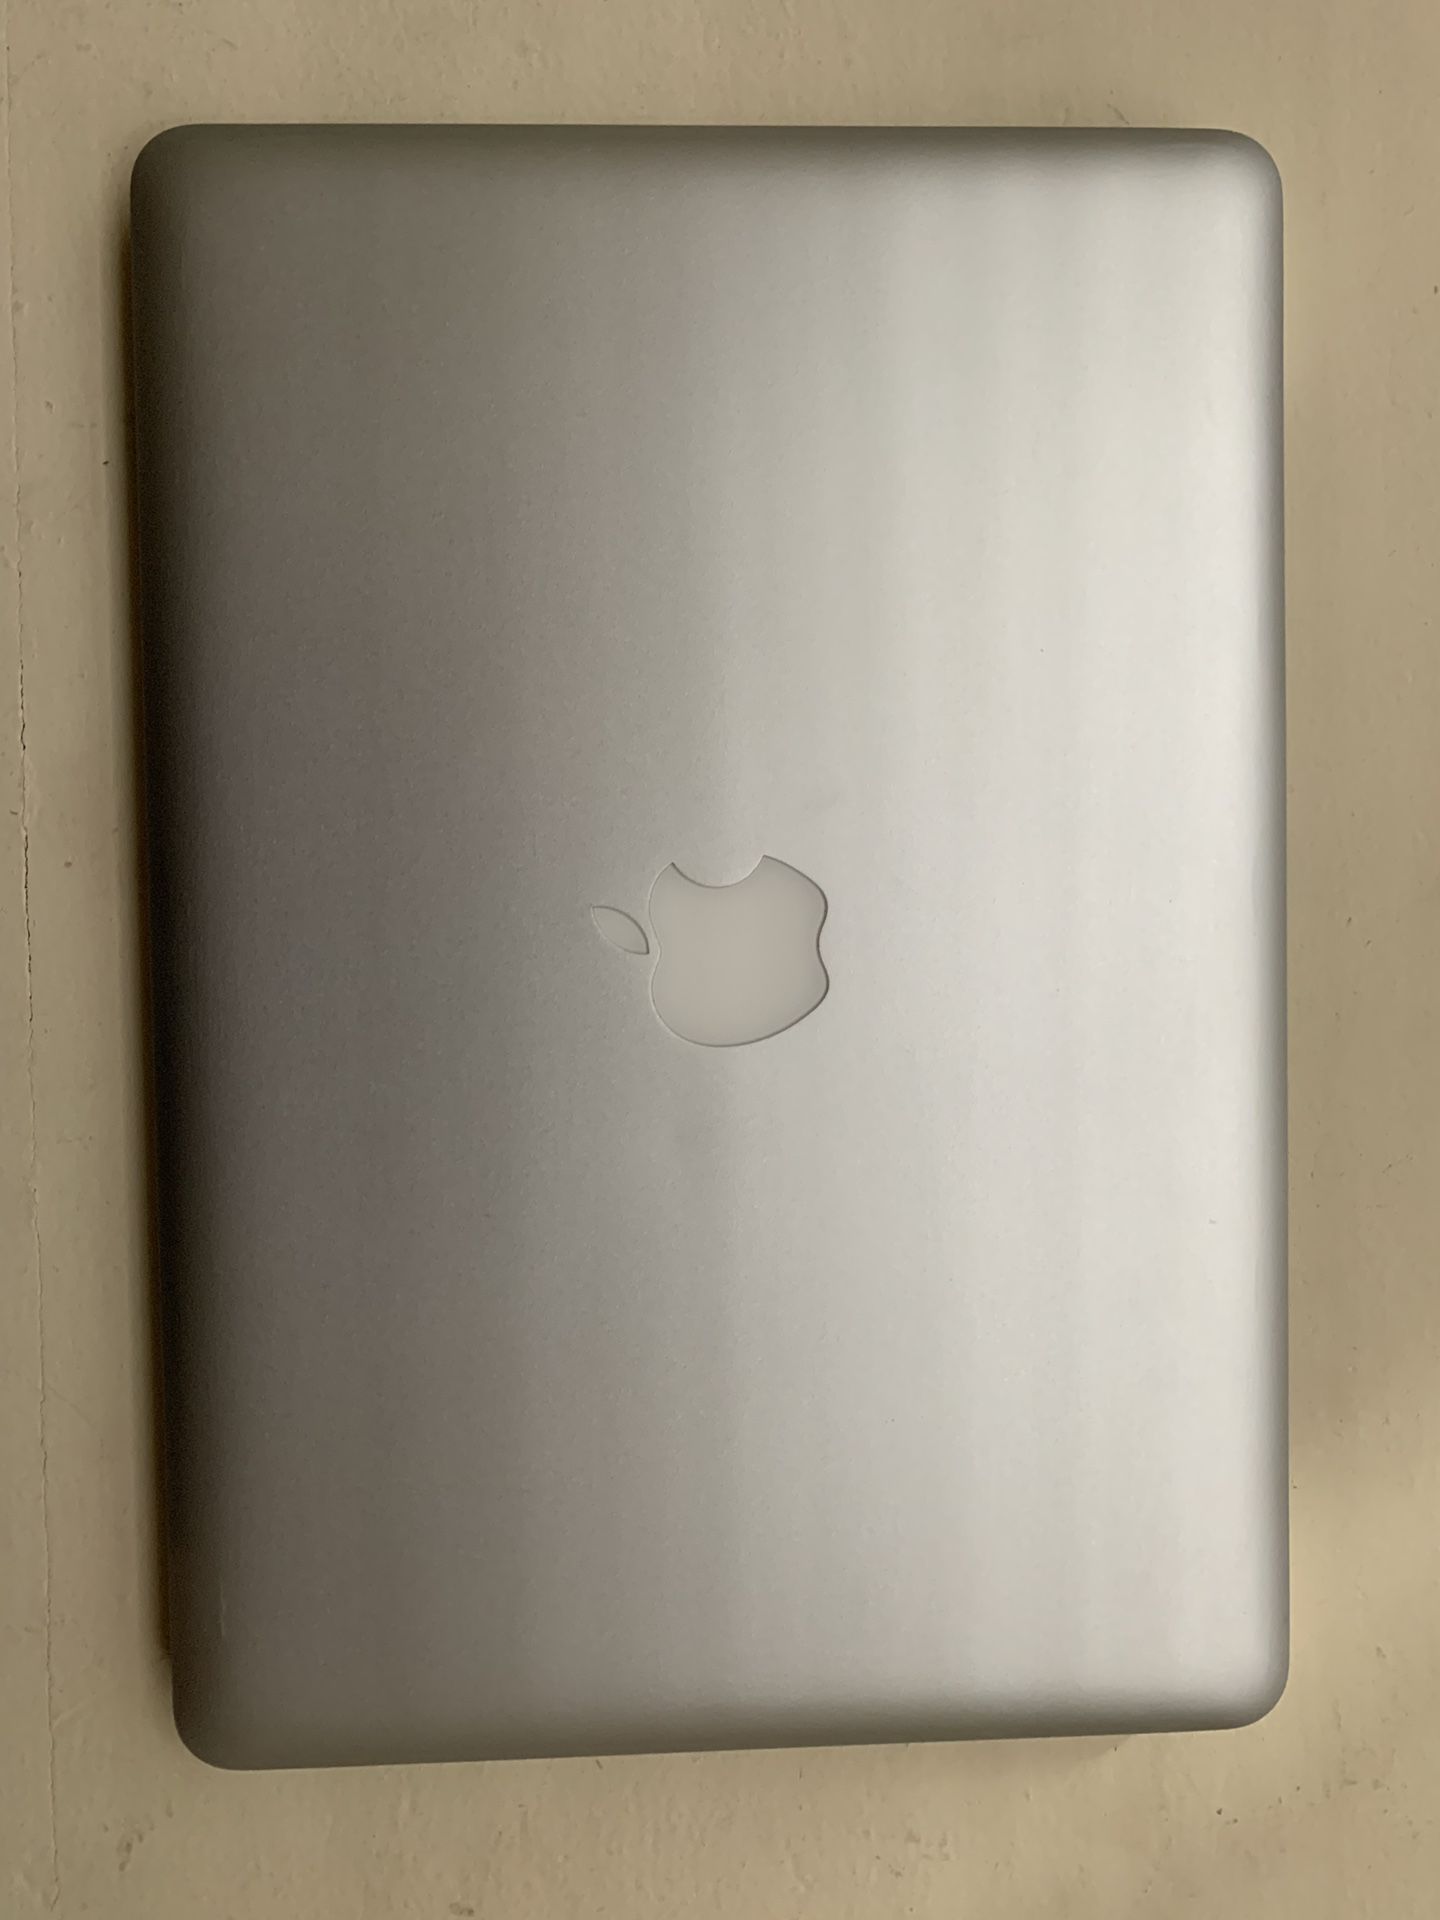 2010 13 inch apple MacBook Pro